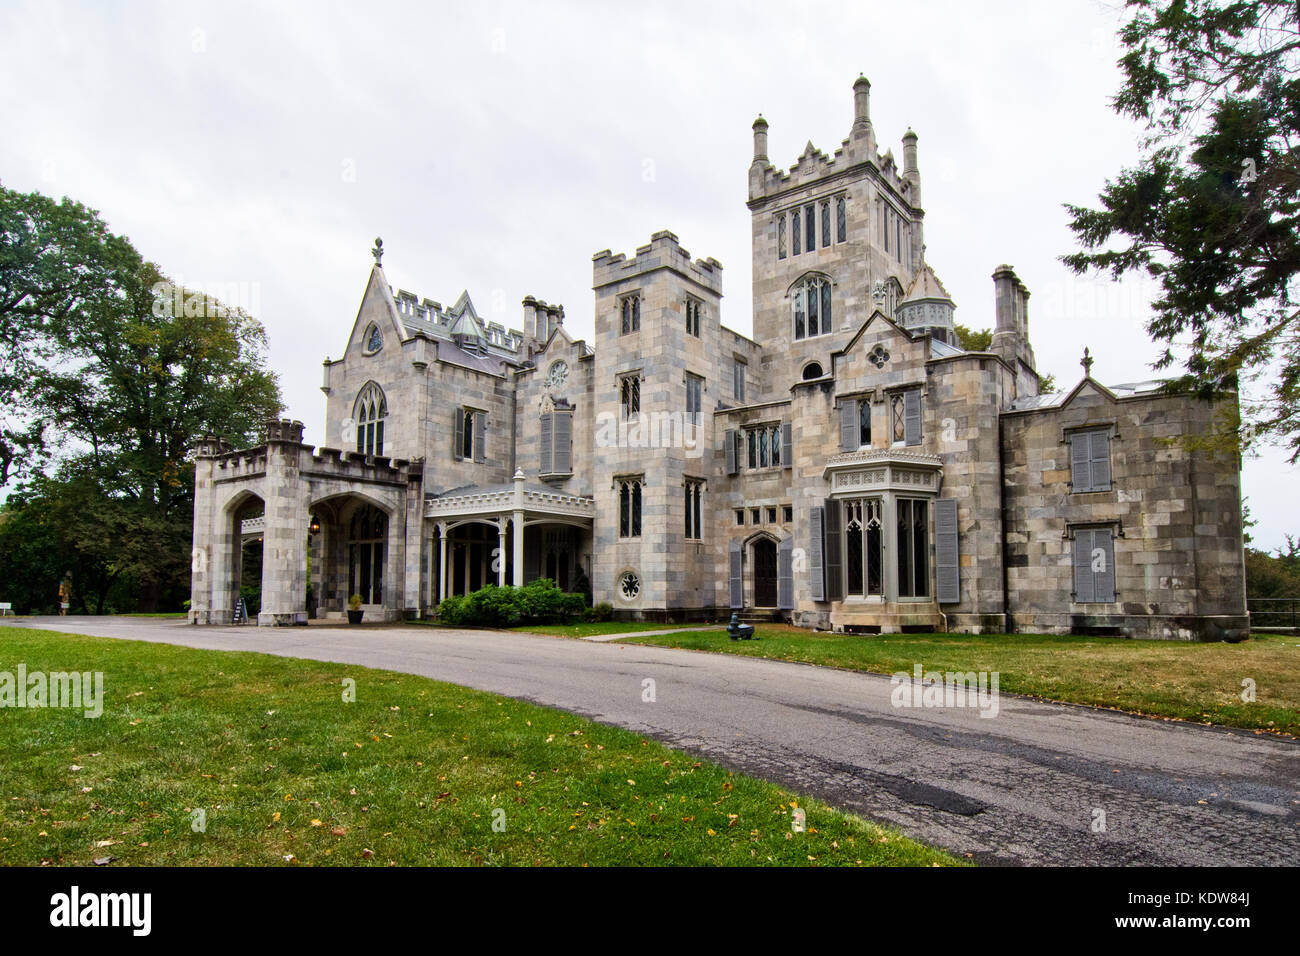 Die gotische Architektur des historischen Lyndhurst Mansion, an den Ufern des Hudson River, Tarrytown, New York, USA Stockfoto